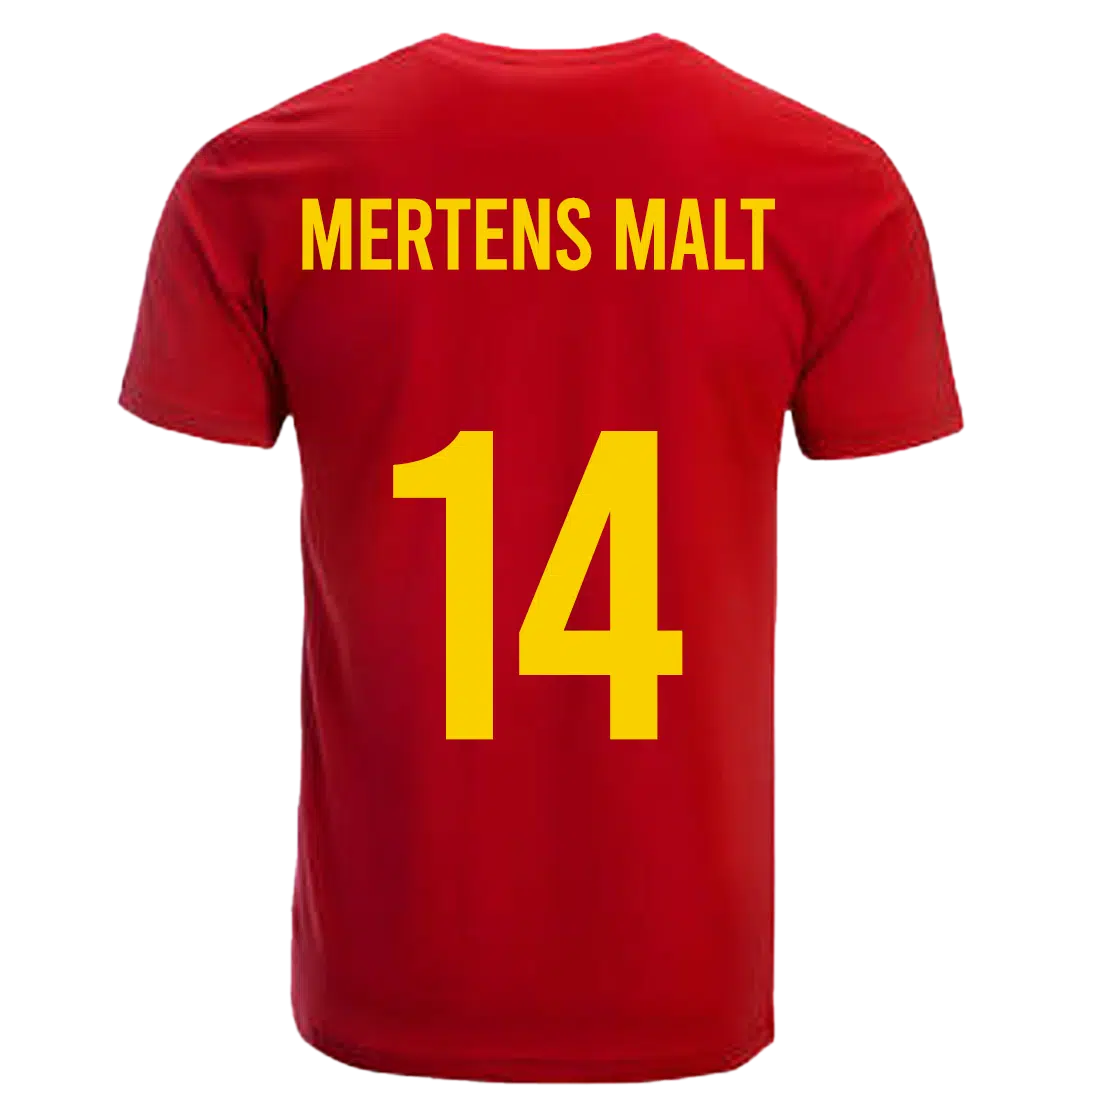 Mertens Belgie shirt achterkant